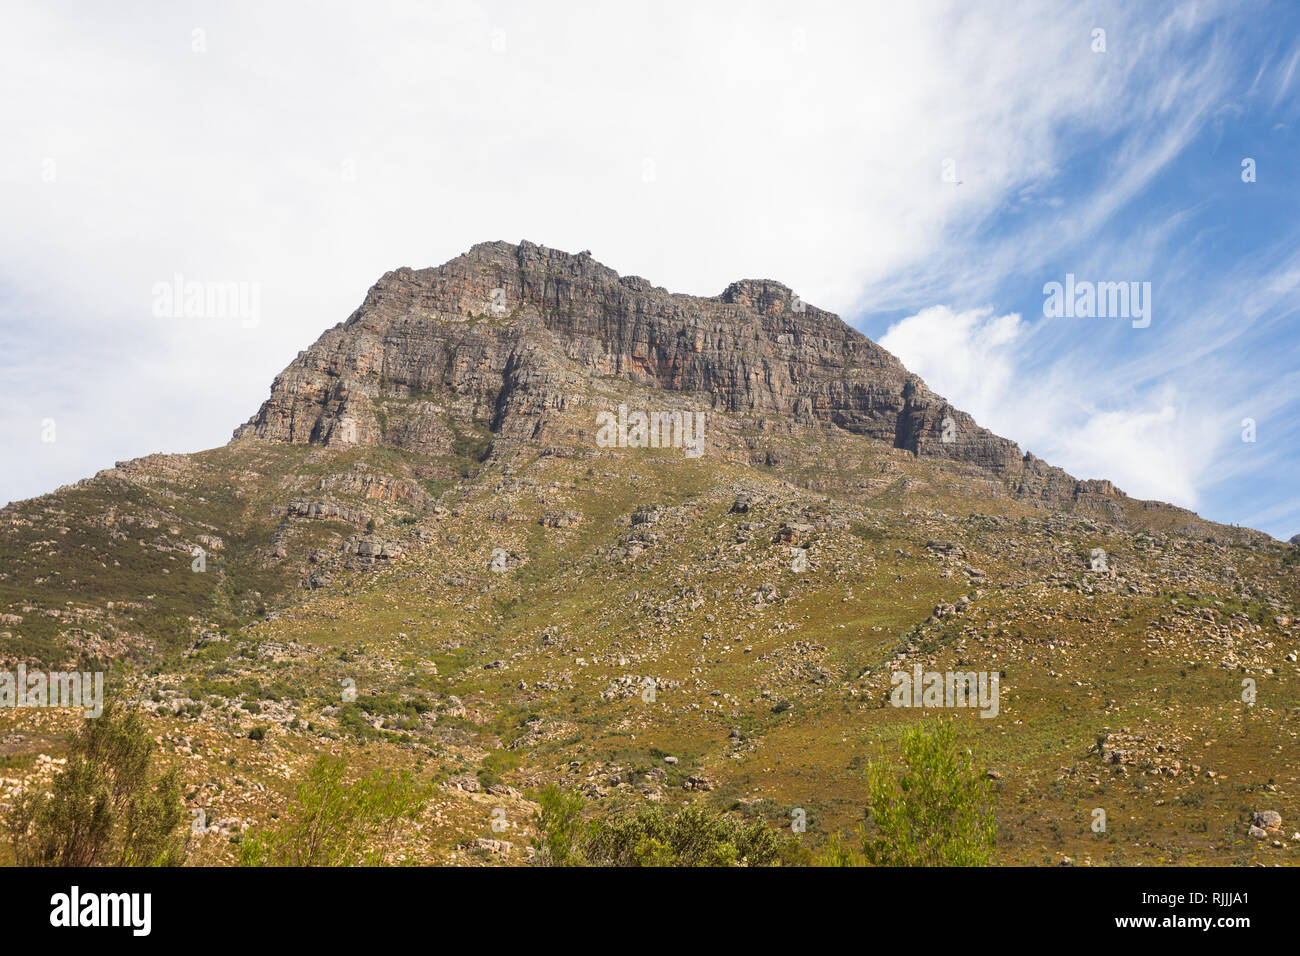 Montagnes dans la province de Western Cape Afrique du Sud, situé entre Paarl et Worcester, les montagnes du Toitskloof font partie de la ceinture plissée du Cap Banque D'Images